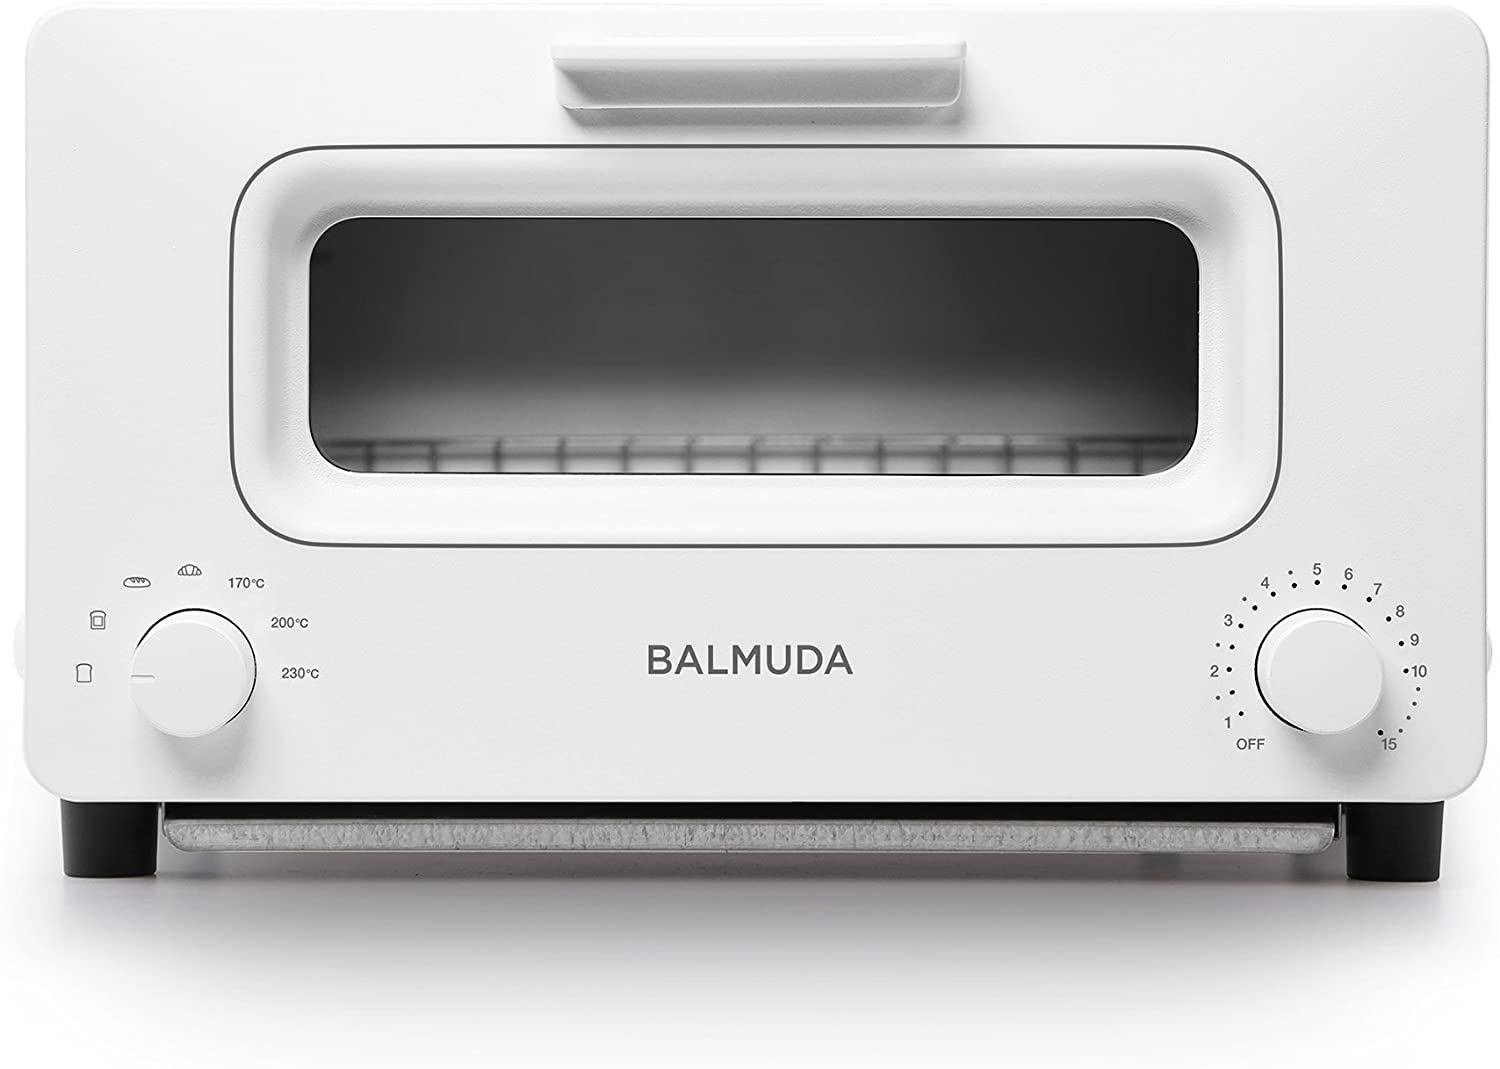 【BALMUDA】スチームオーブントースターBALMUDA The Toaster(ホワイト)